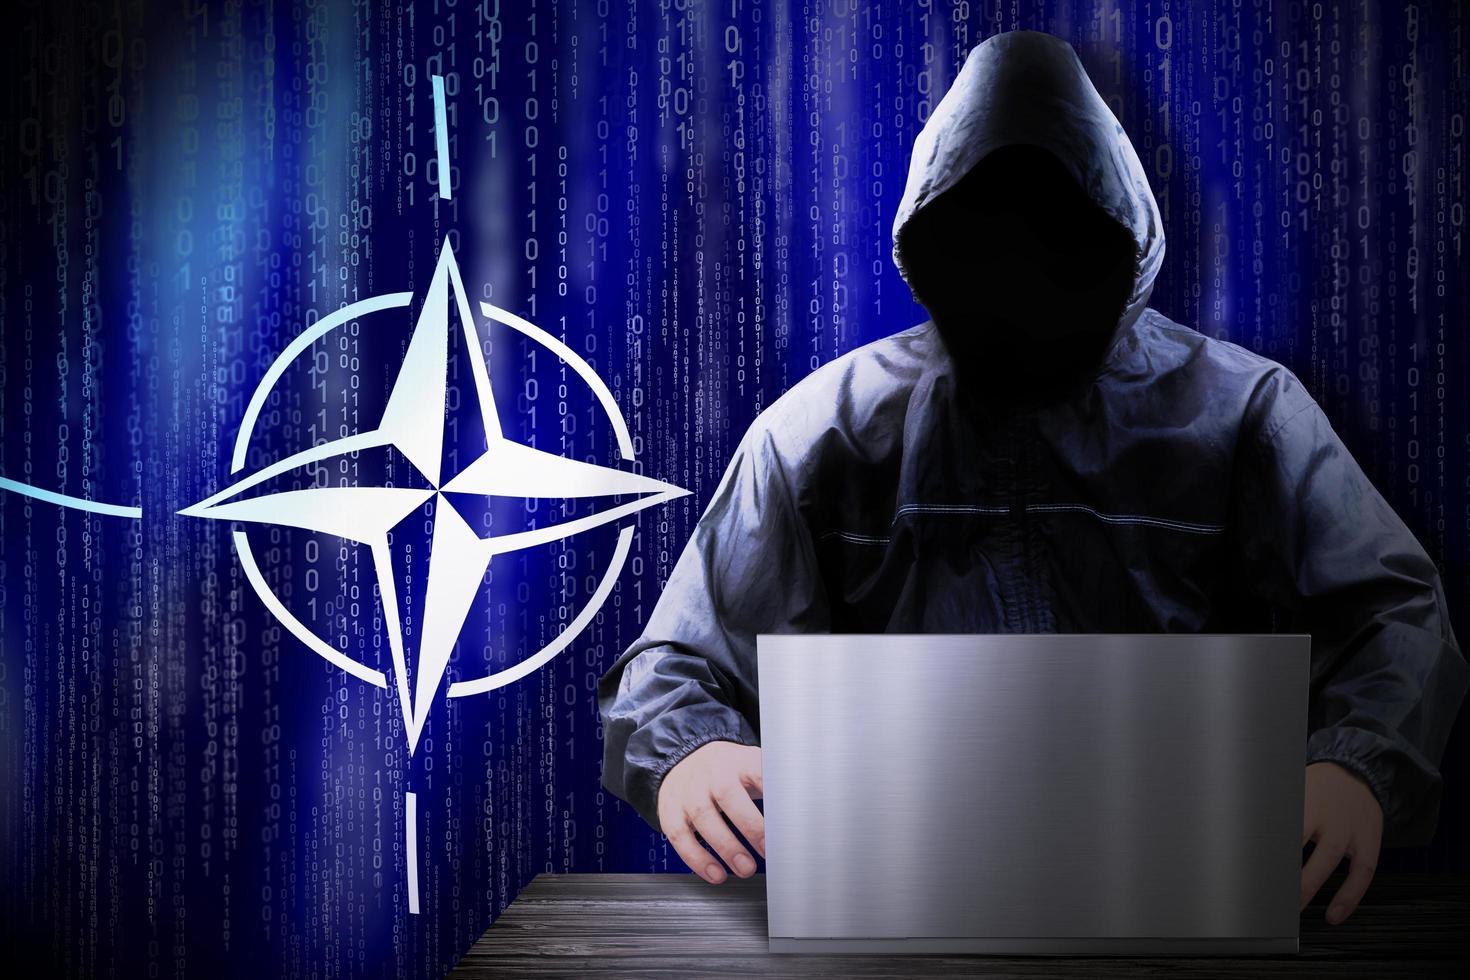 anónimo encapuchado hacker y bandera de OTAN, binario código - ciber ataque concepto foto